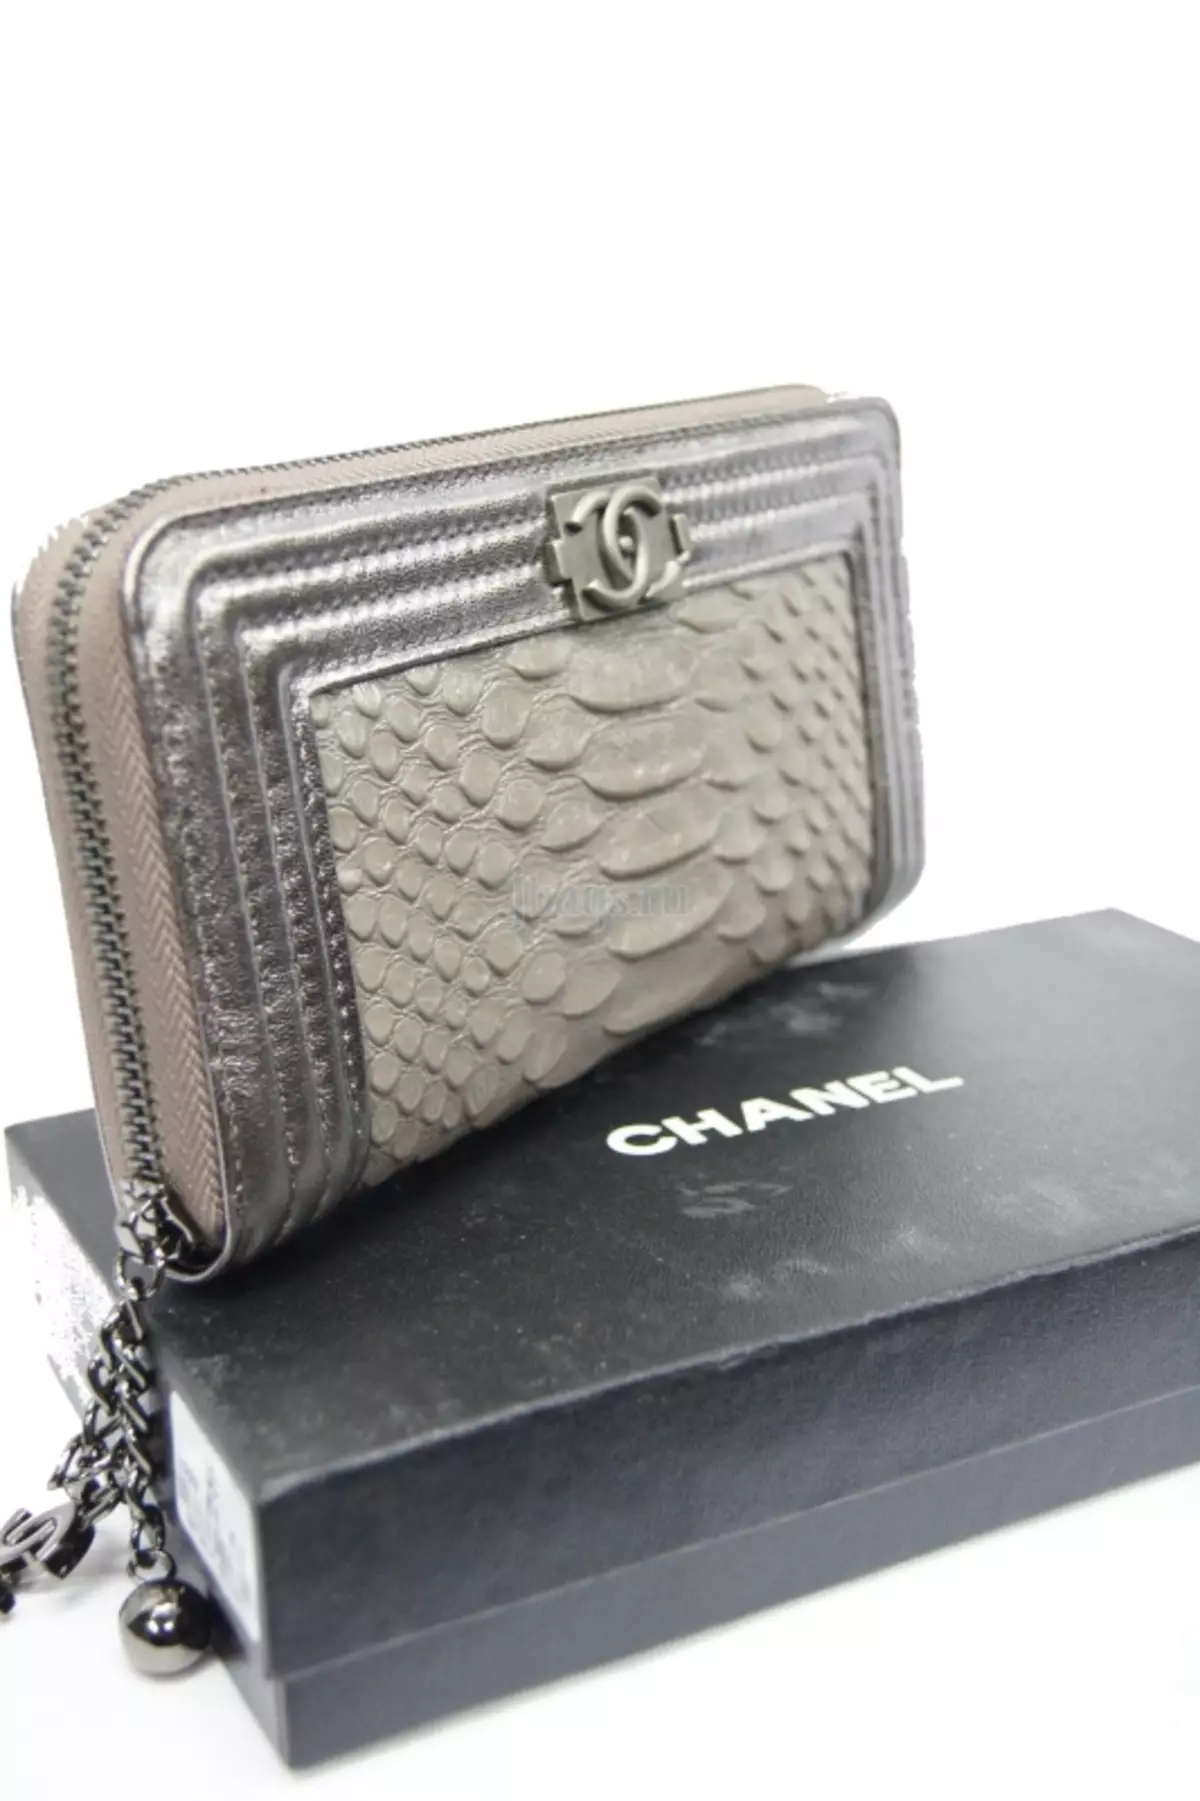 Wallet Chanel (Sary 35): kitapom-behivavy sy modely marika hoditra 15156_13